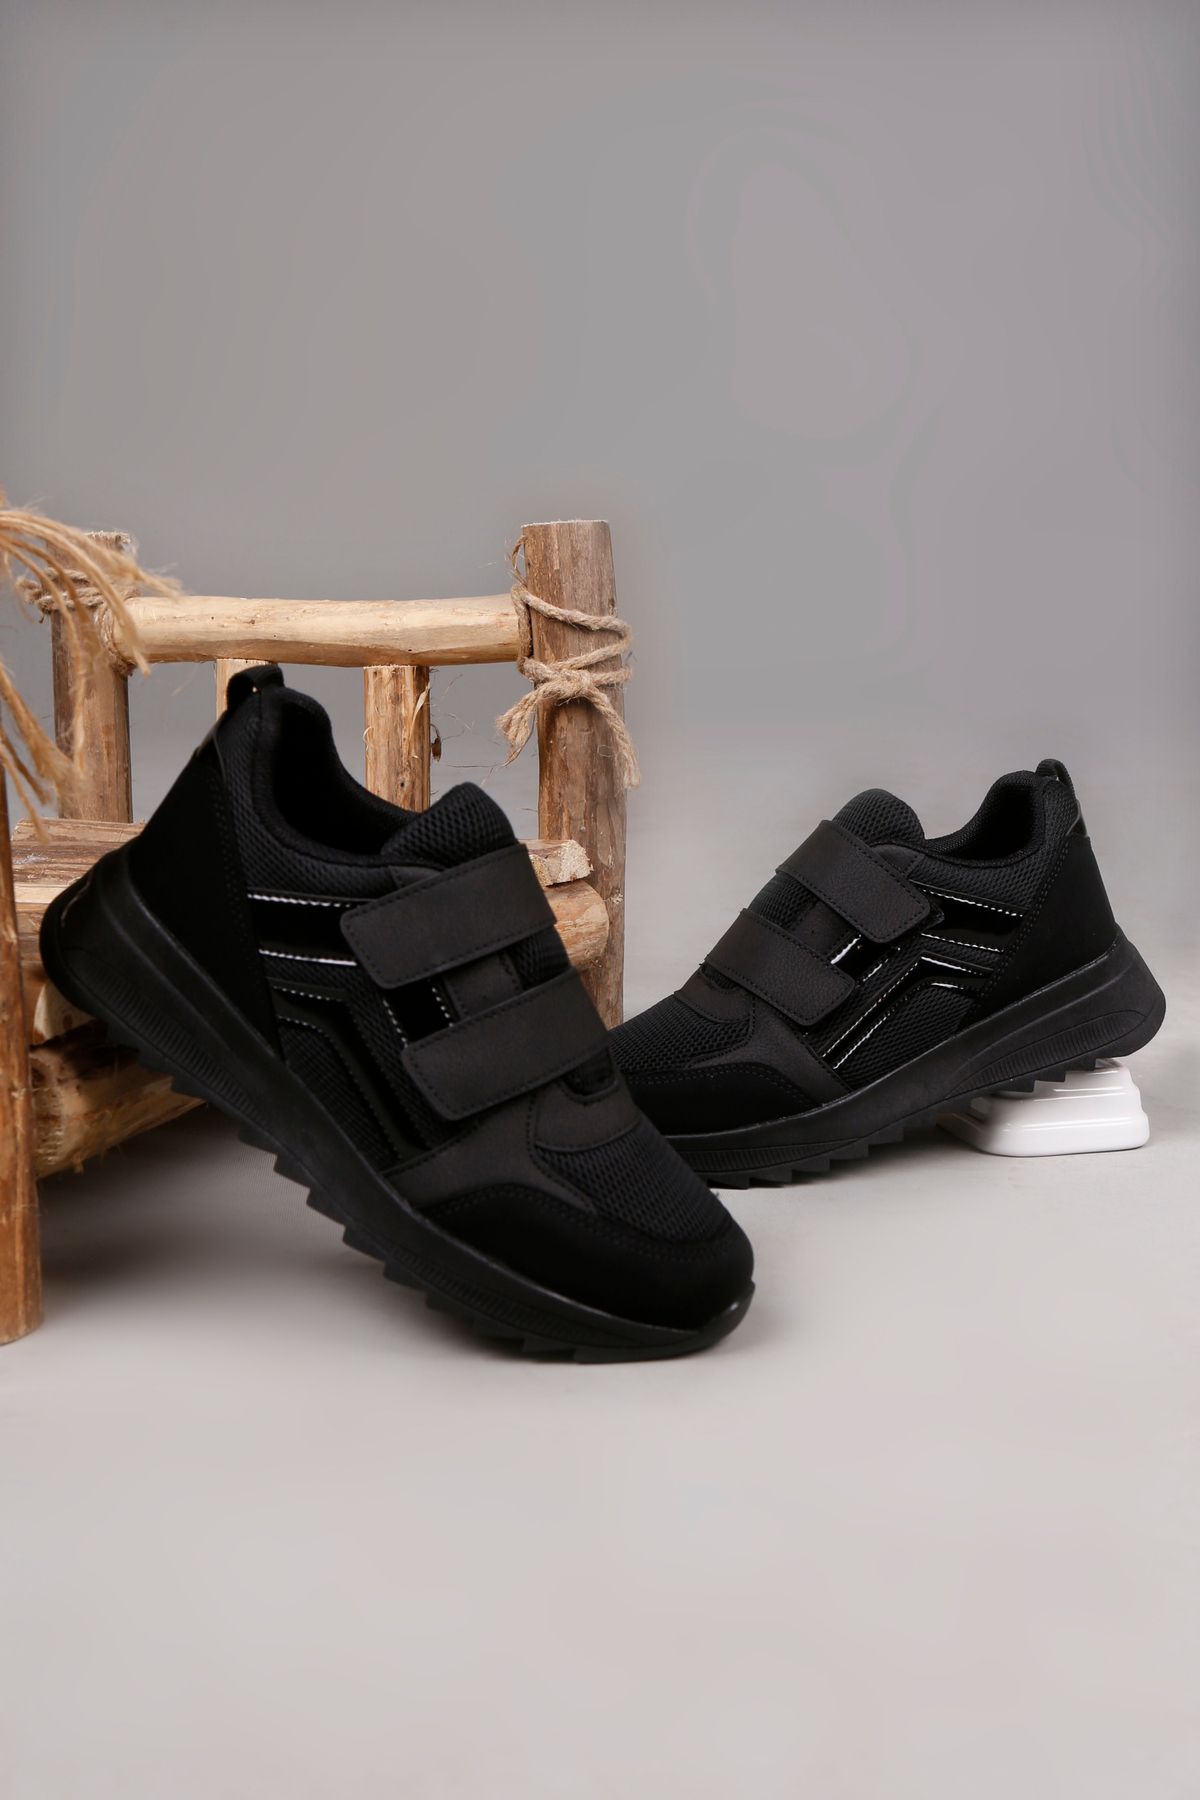 lord's ayakkabı Kadın Siyah-Siyah Kalın Taban Çift Bantlı Spor Ayakkabı